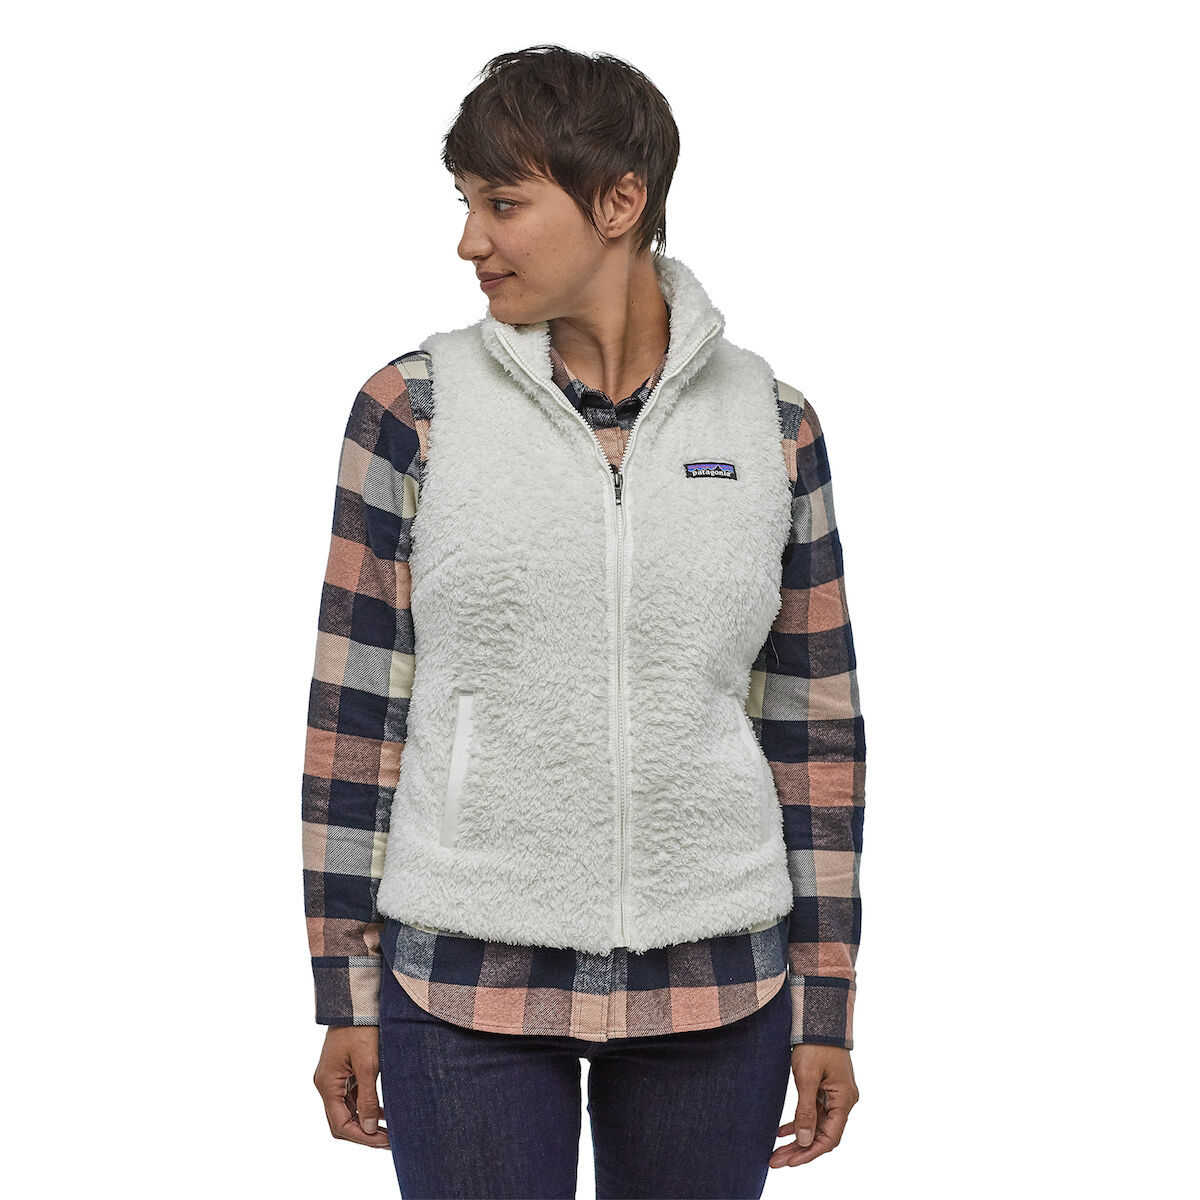 Patagonia Los Gatos Vest - Fleece jacket - Women's